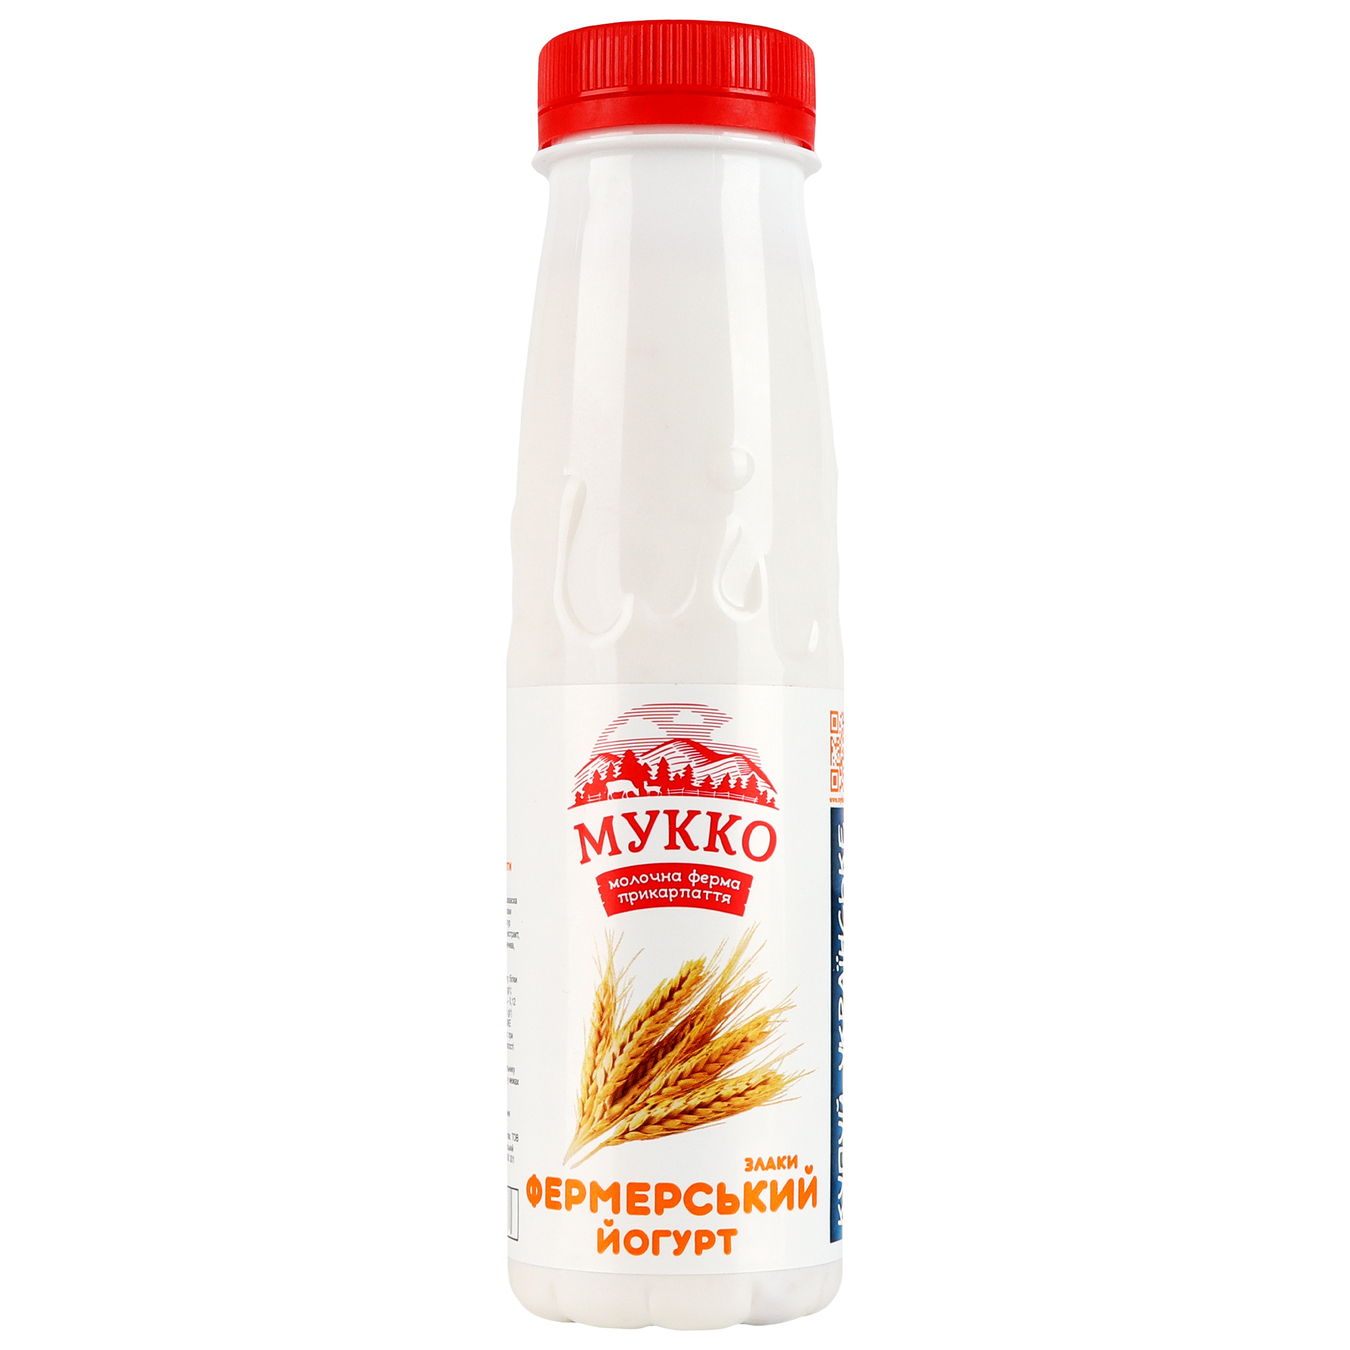 Yogurt Mukko cereals 2.6% 250g bottle